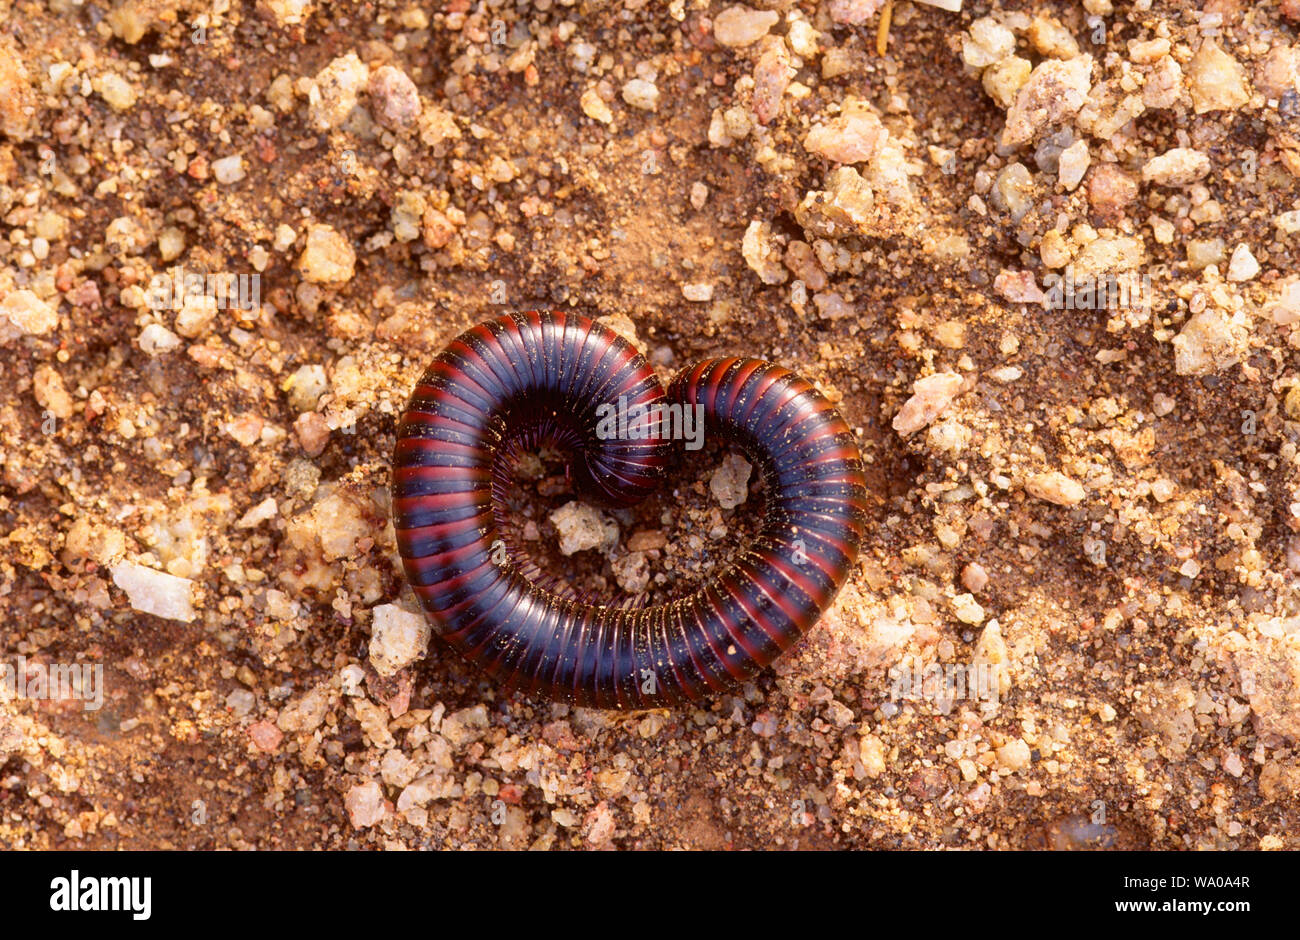 Milliped, Arthropoden, Tier, inect, Wüste, Namibia, 30074772 Stockfoto